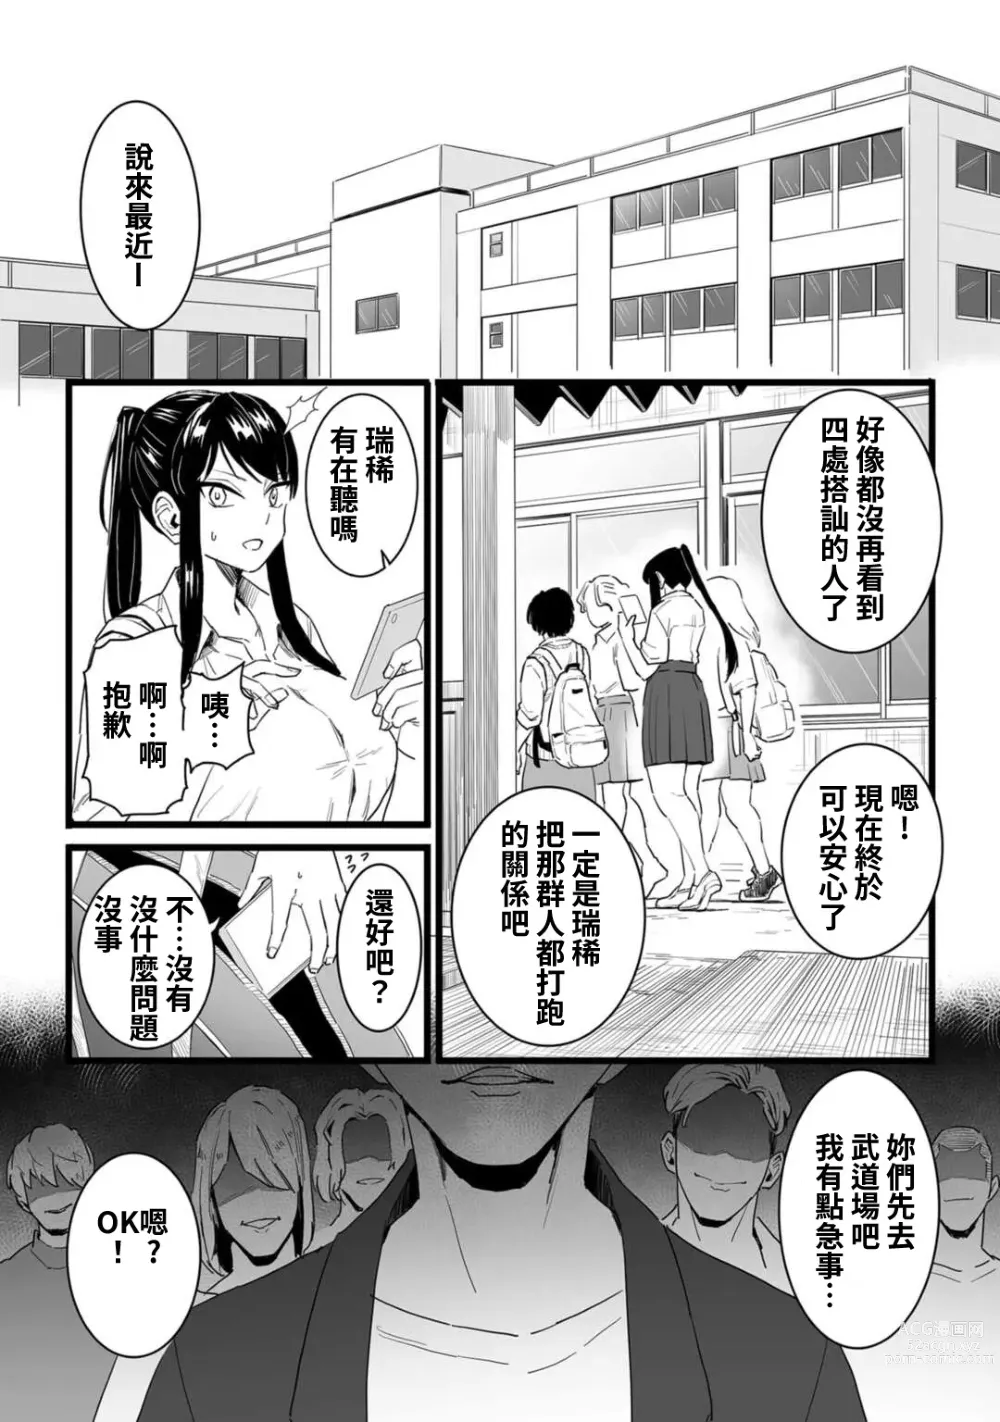 Page 13 of manga Shushou, Otsu!